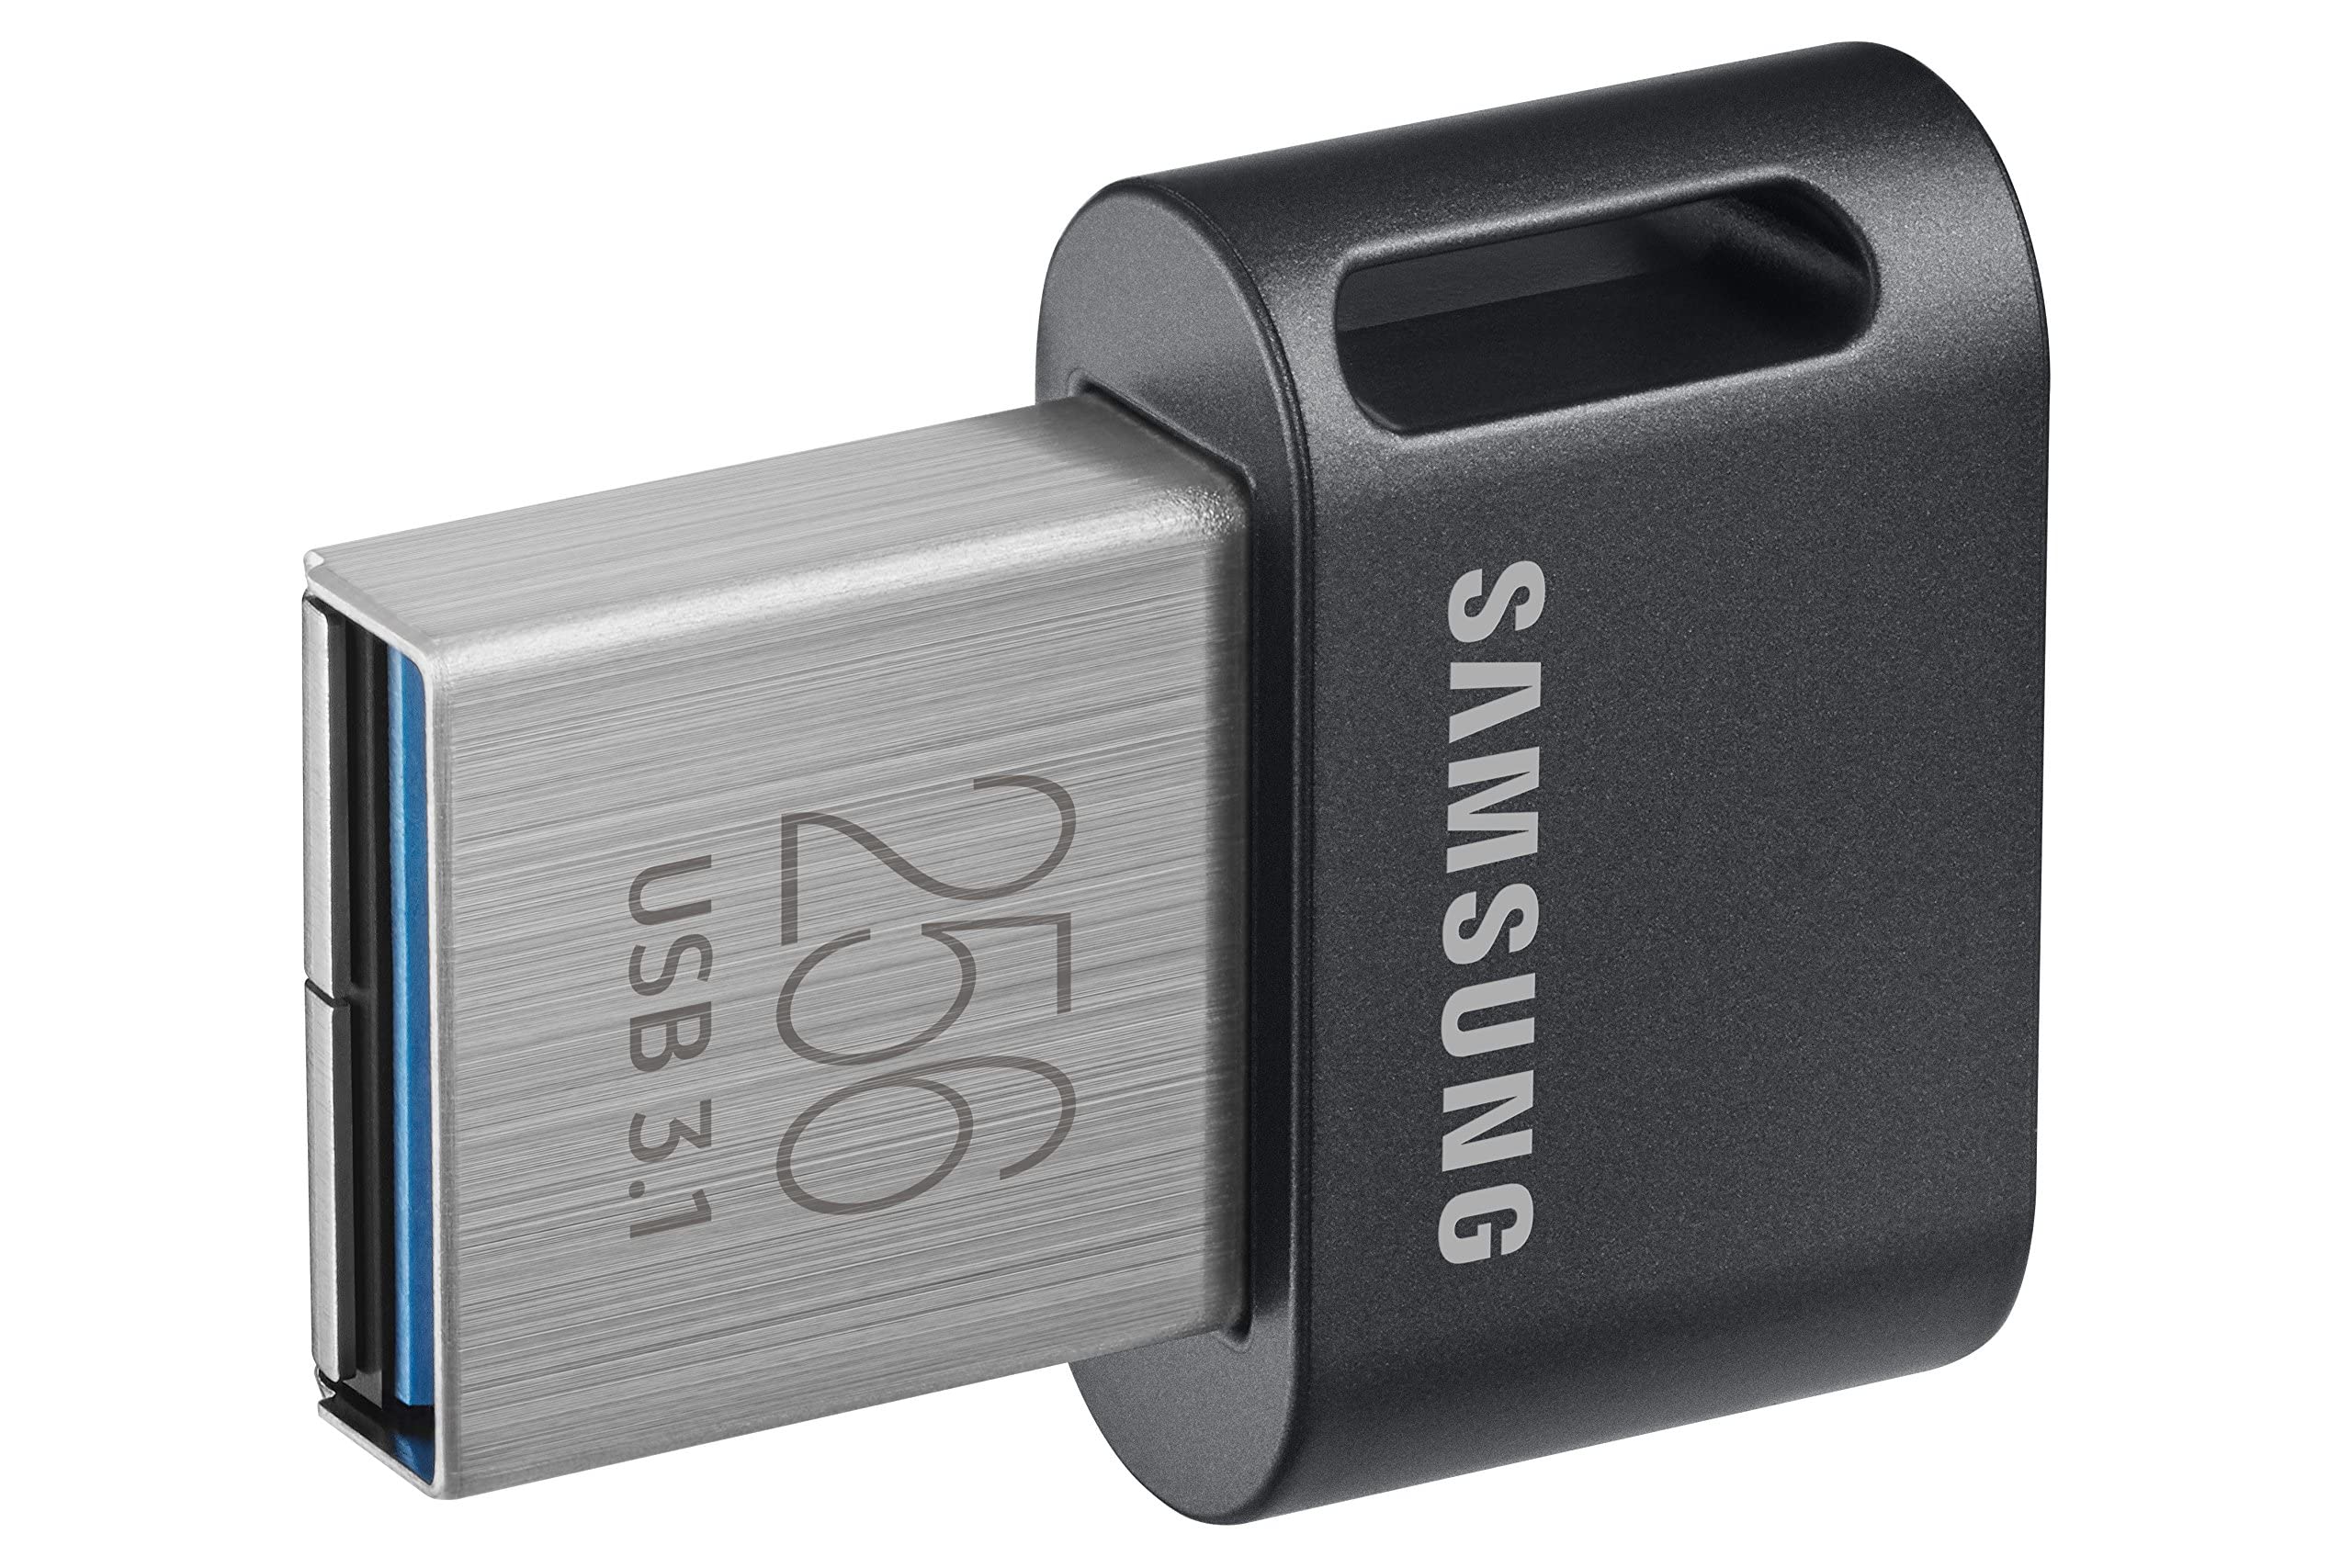 SAMSUNG MUF-256AB/AM FIT Plus 256GB - 400MB/s USB 3.1 Flash Drive, Gunmetal Gray